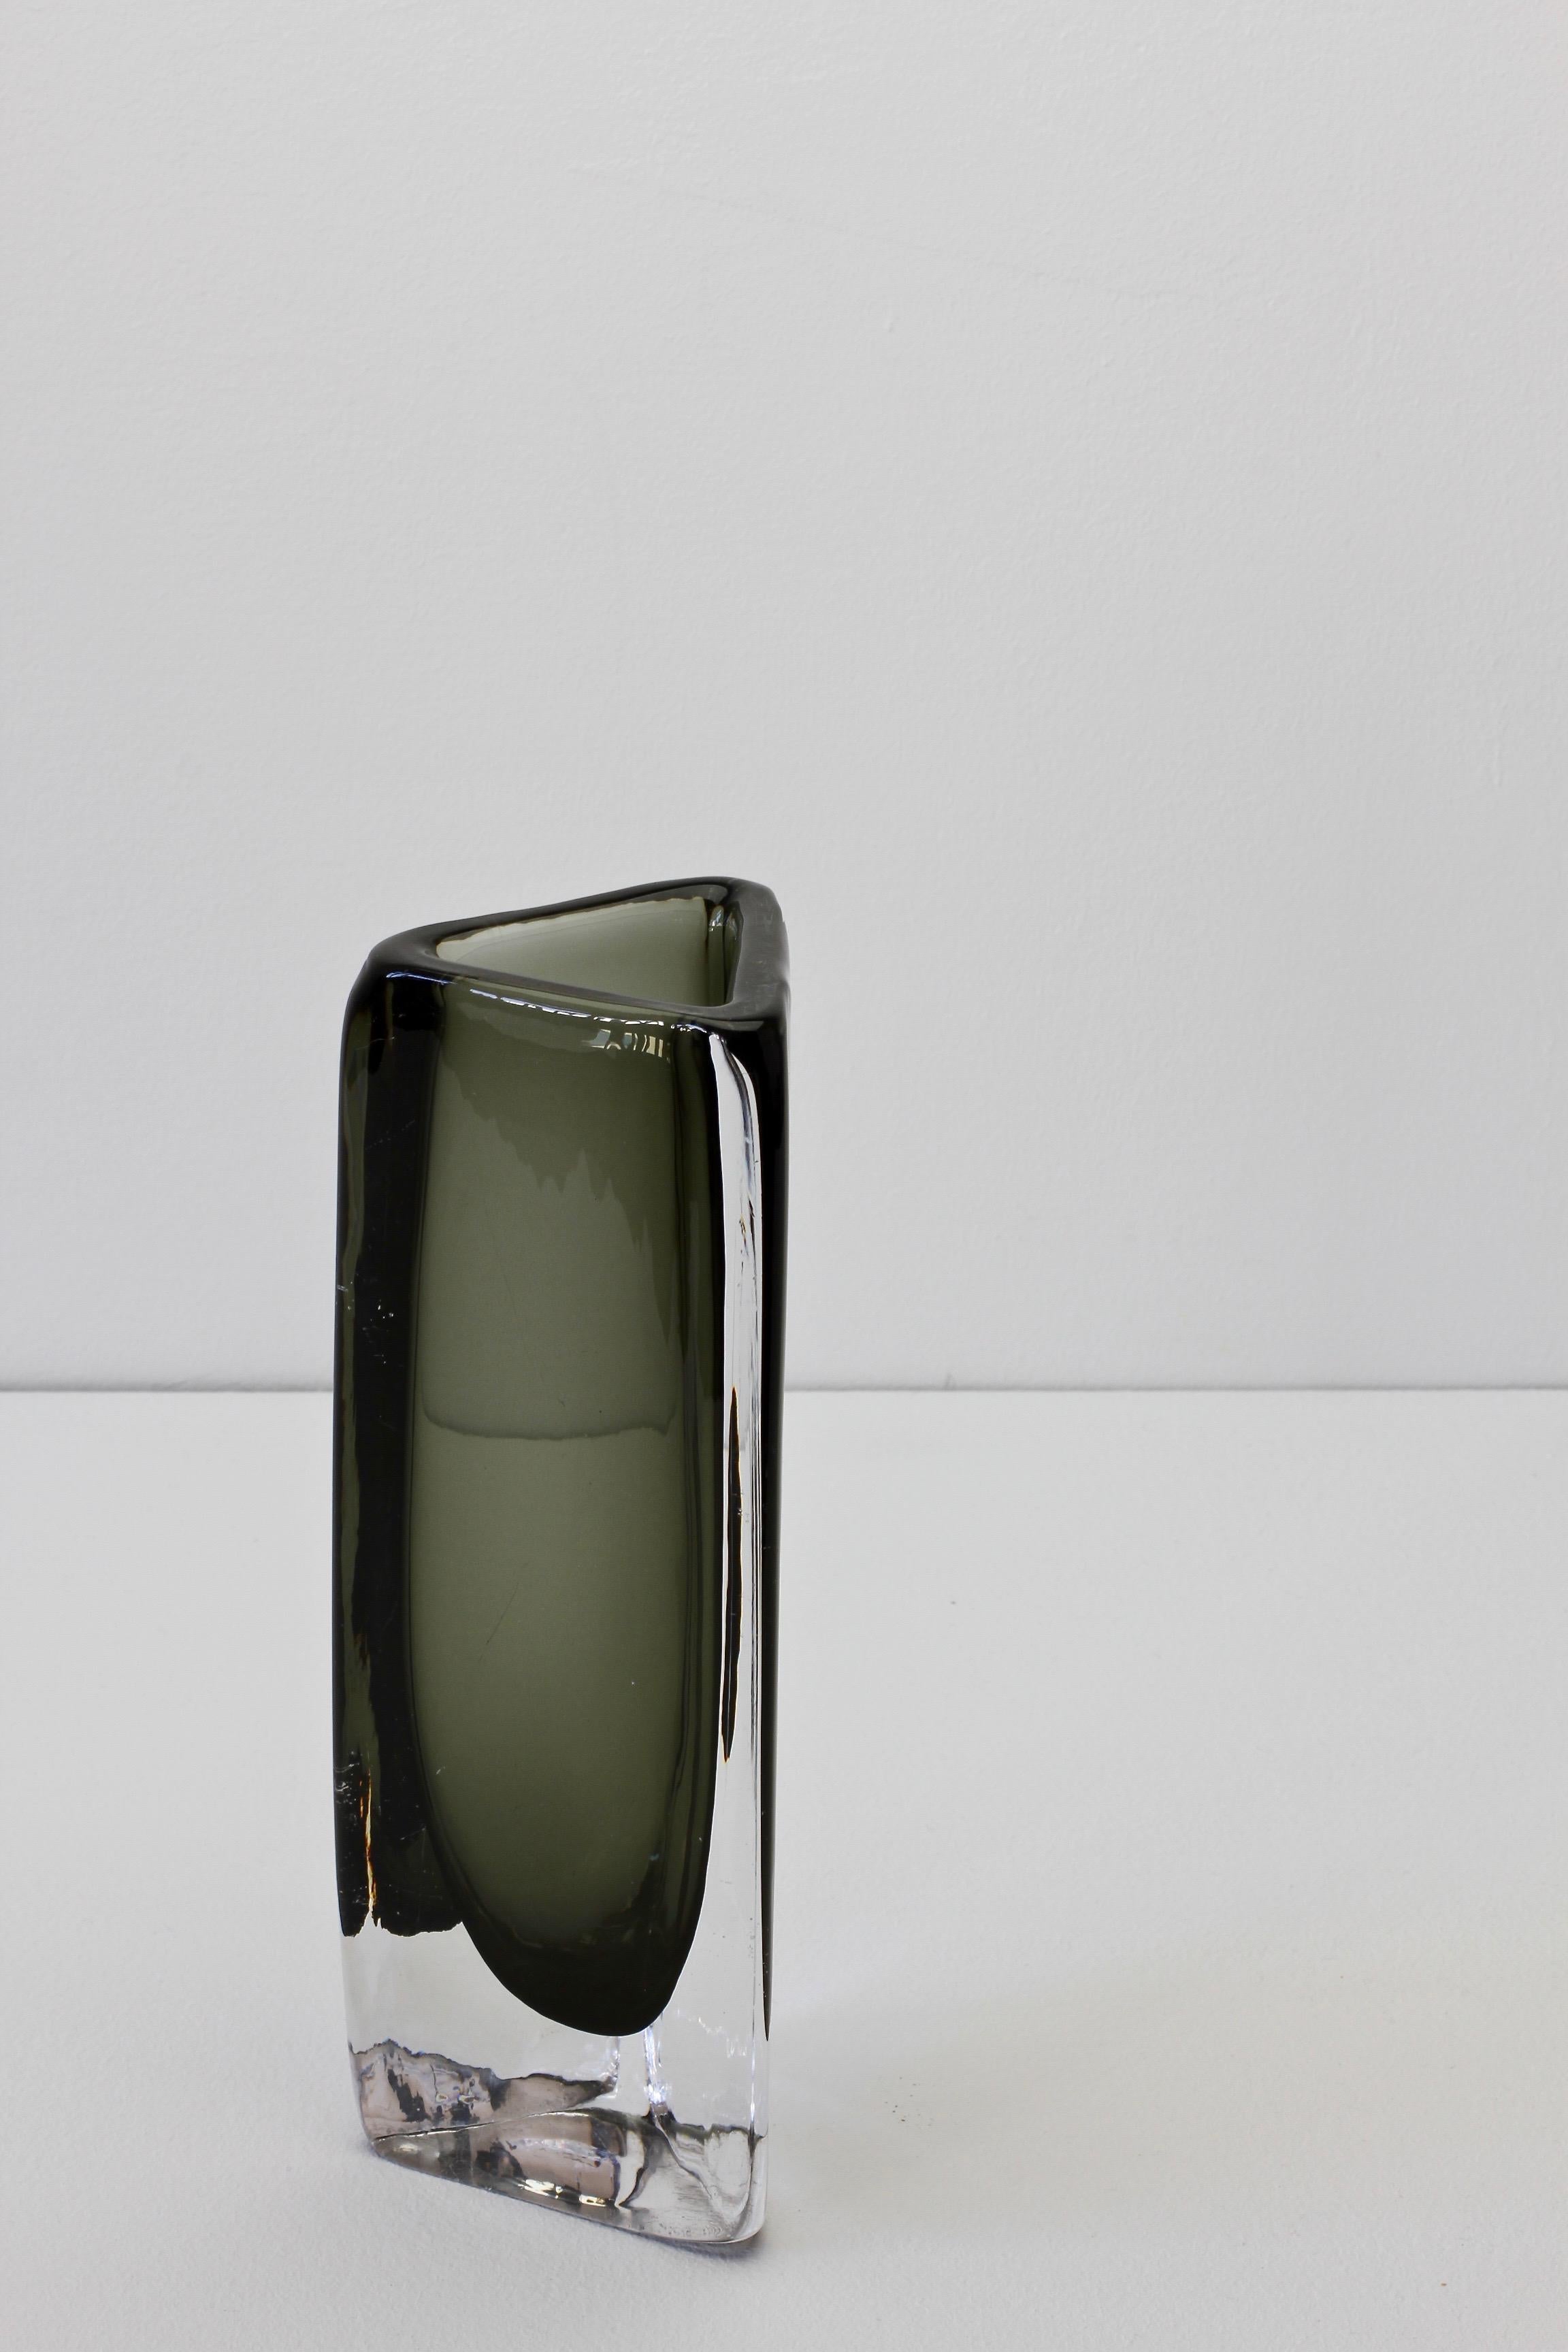 Tall 1950s Dark Toned Sommerso Vase Signed Nils Landberg for Orrefors Glass For Sale 8